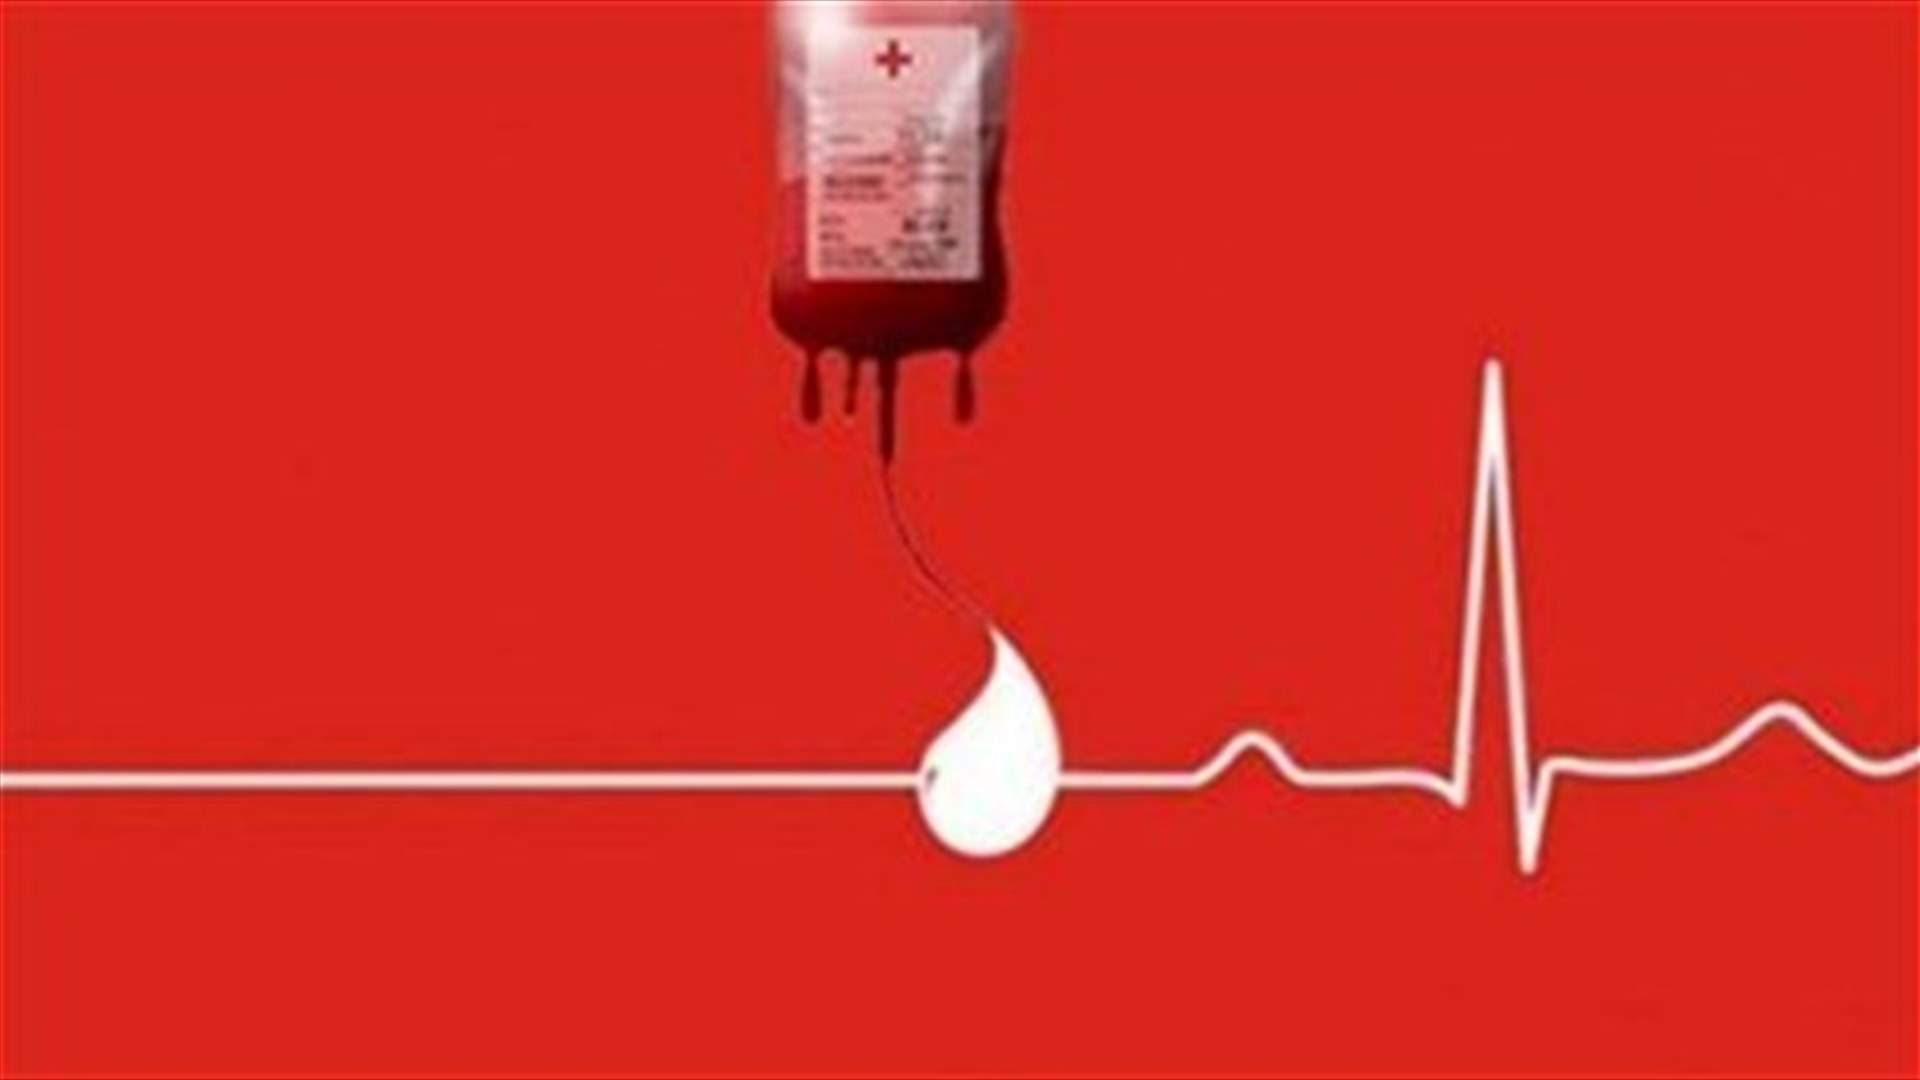 مريض بحاجة ماسة الى دم من فئة O+ في مستشفى سيدة لبنان... للتبرع الرجاء الإتصال على الرقم التالي: 71204134